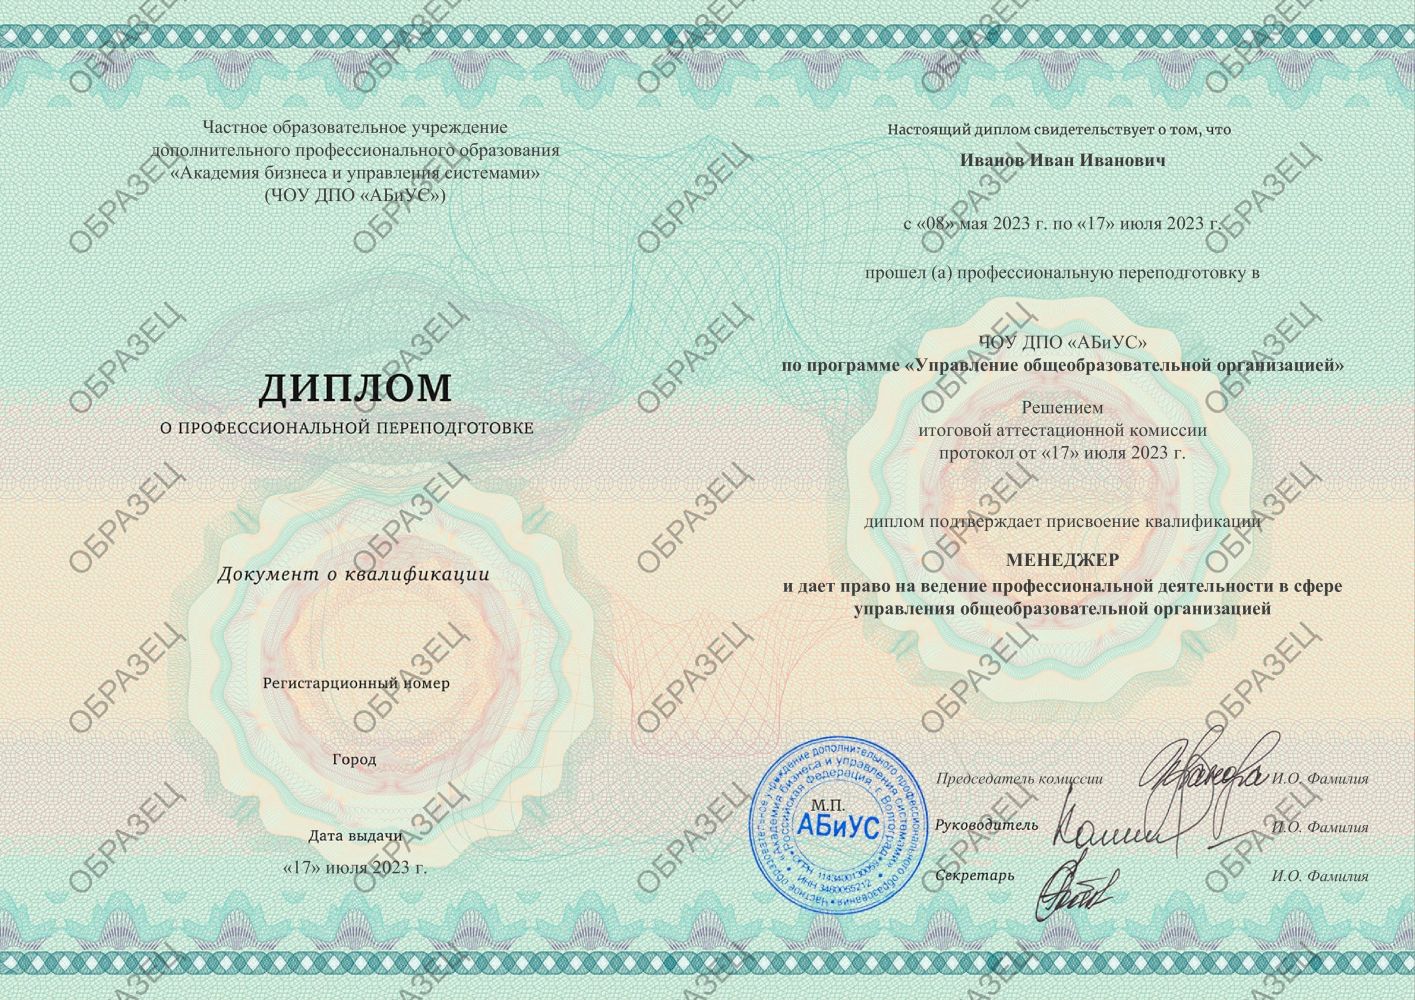 Диплом Управление общеобразовательной организацией 260 часов 9063 руб.